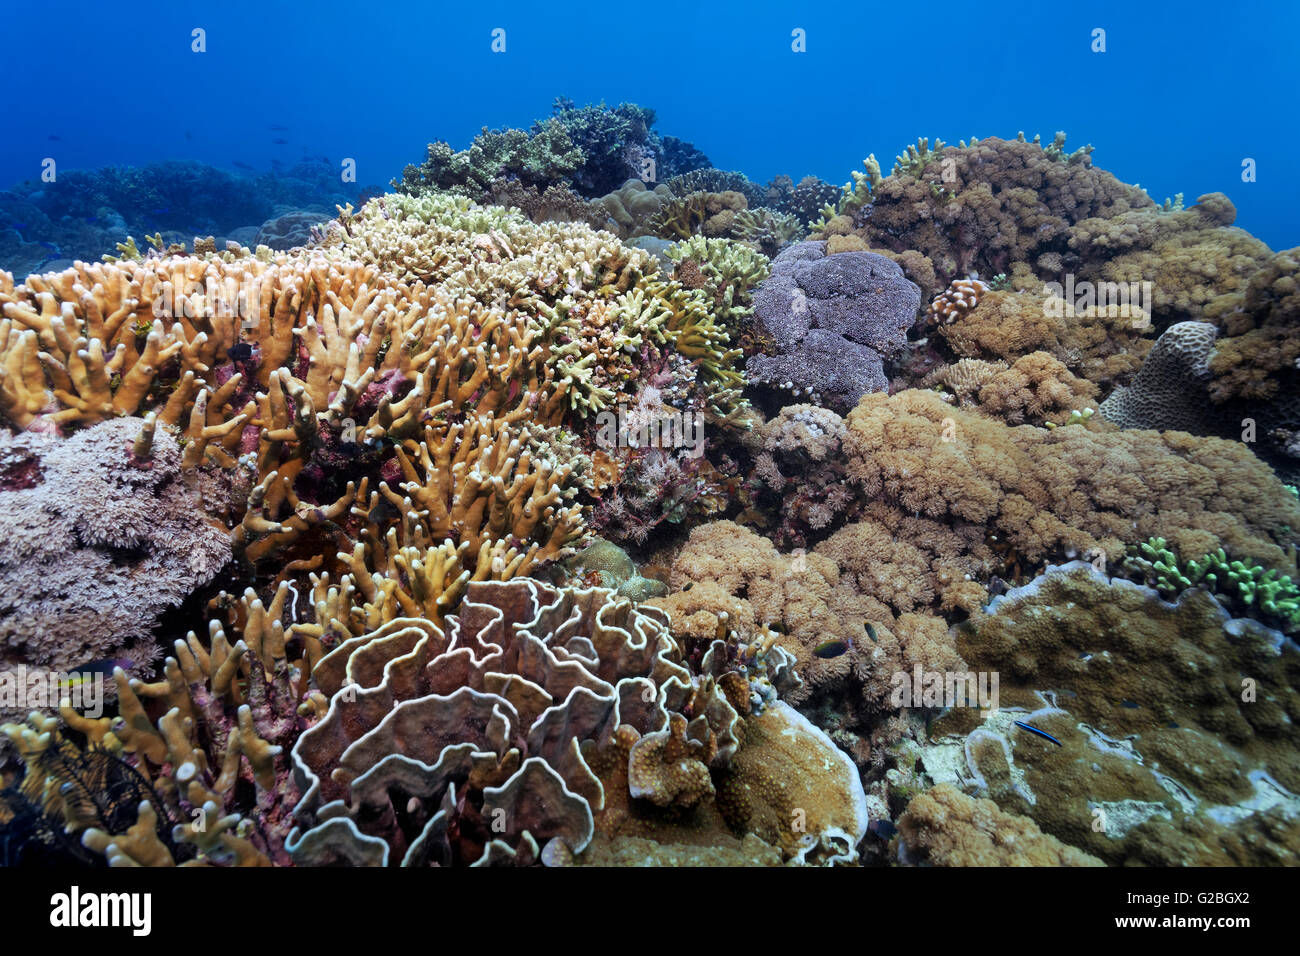 Underwater scenery, corals, various hard corals on reef, Great Barrier Reef, Queensland, Cairns, Pacific Ocean, Australia Stock Photo